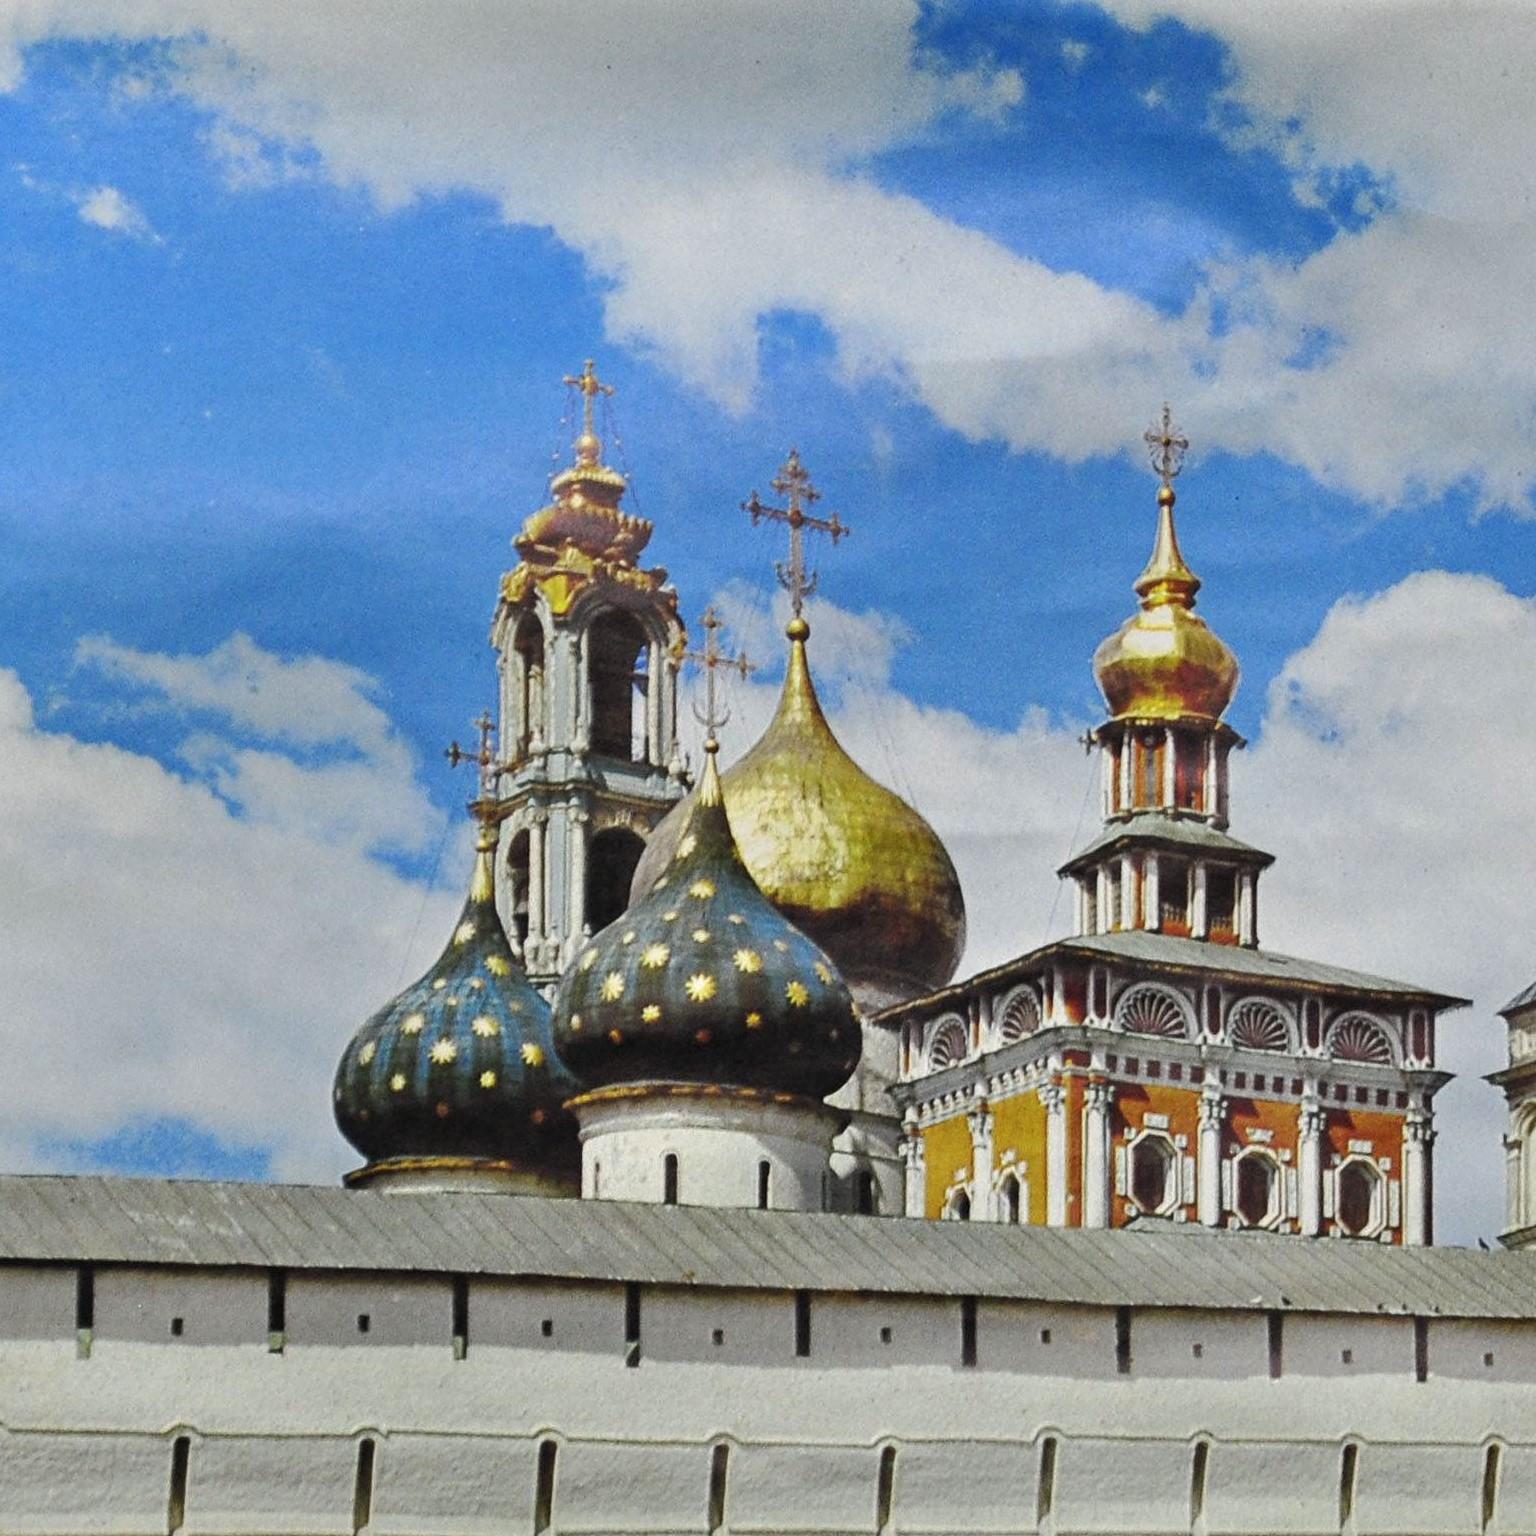 Un superbe tableau mural représentant le monastère de Sagorsk, un monastère orthodoxe russe pour hommes. Utilisé comme matériel pédagogique dans les écoles allemandes. Impression colorée sur papier renforcé par de la toile. Photo : J. Kinkeline.